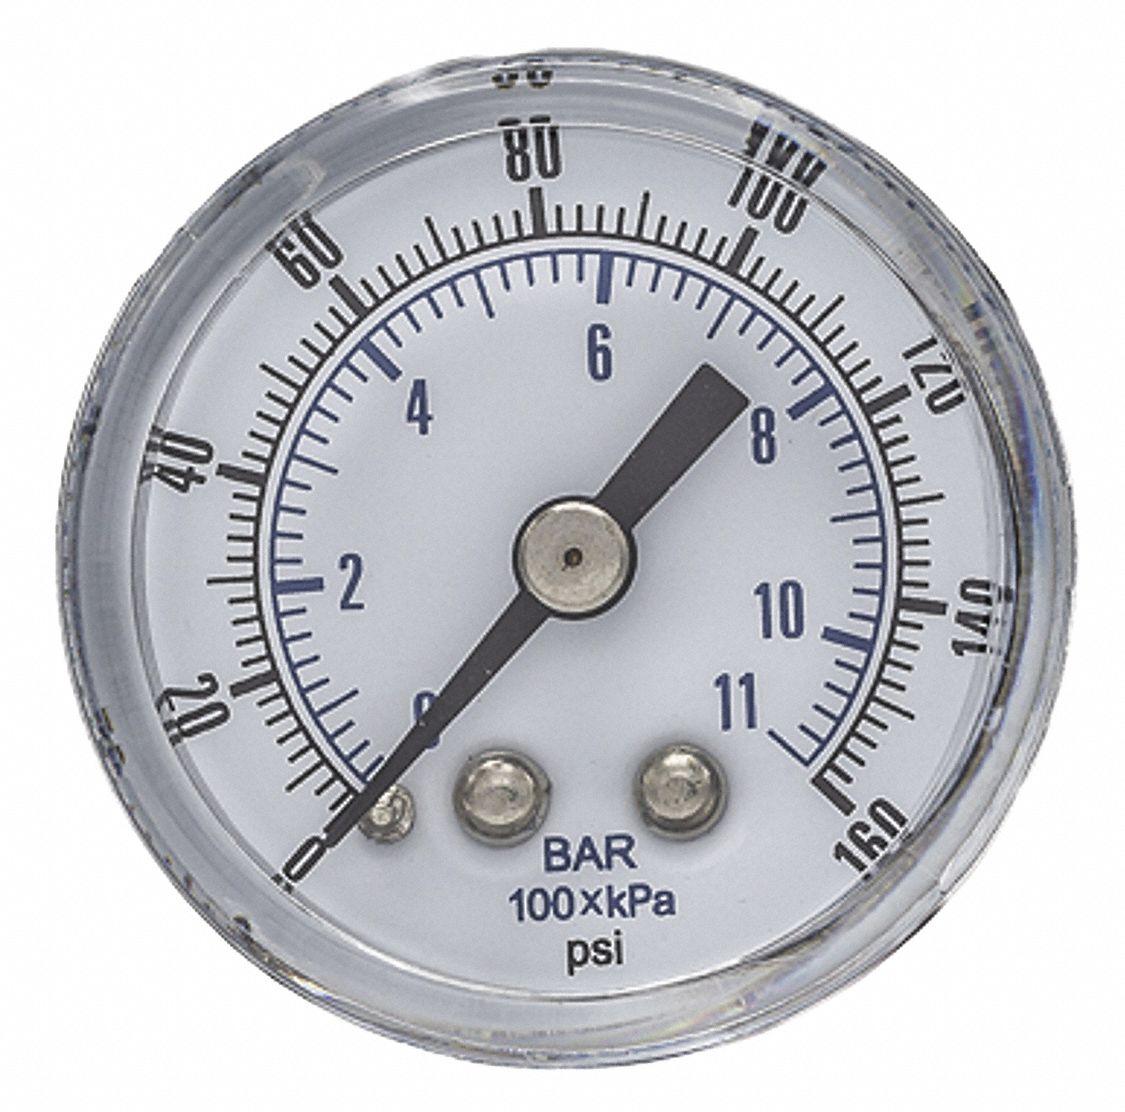 pressure gauge range